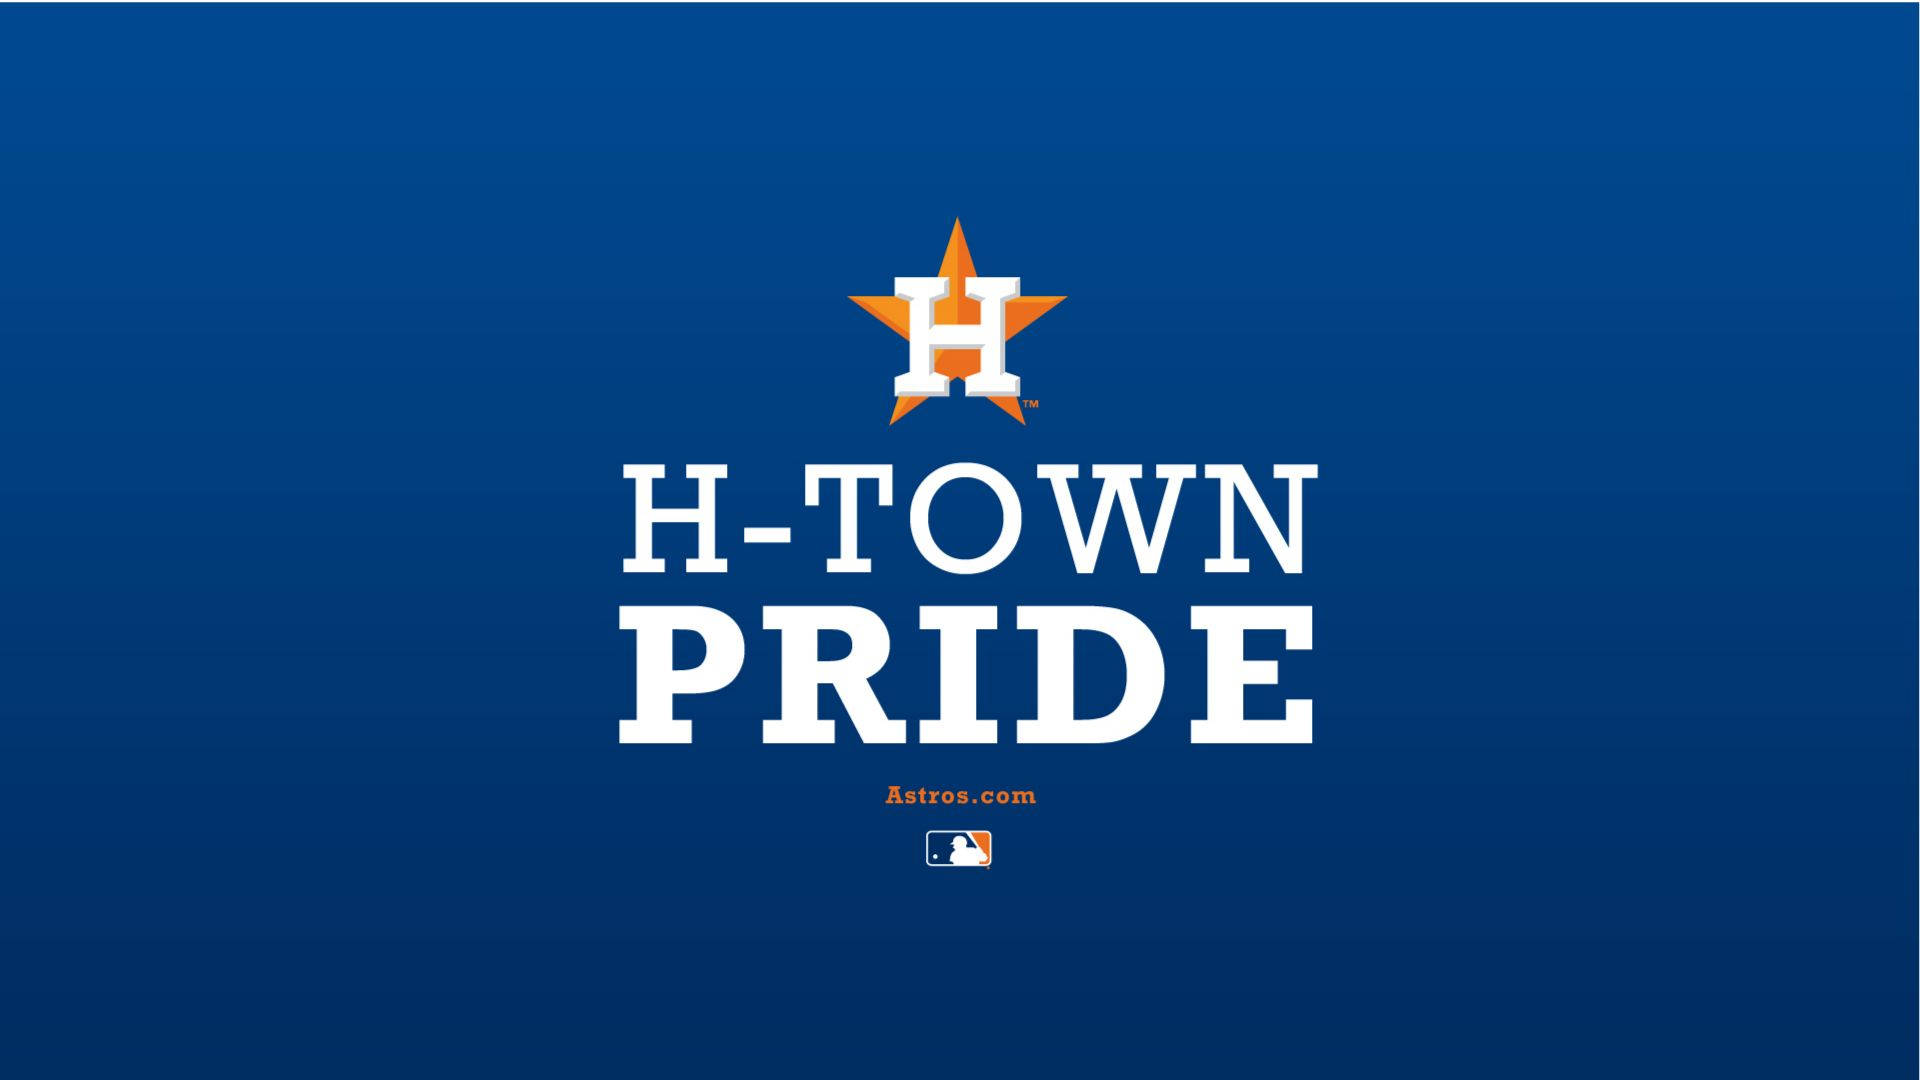 Houston Astros H-town Pride